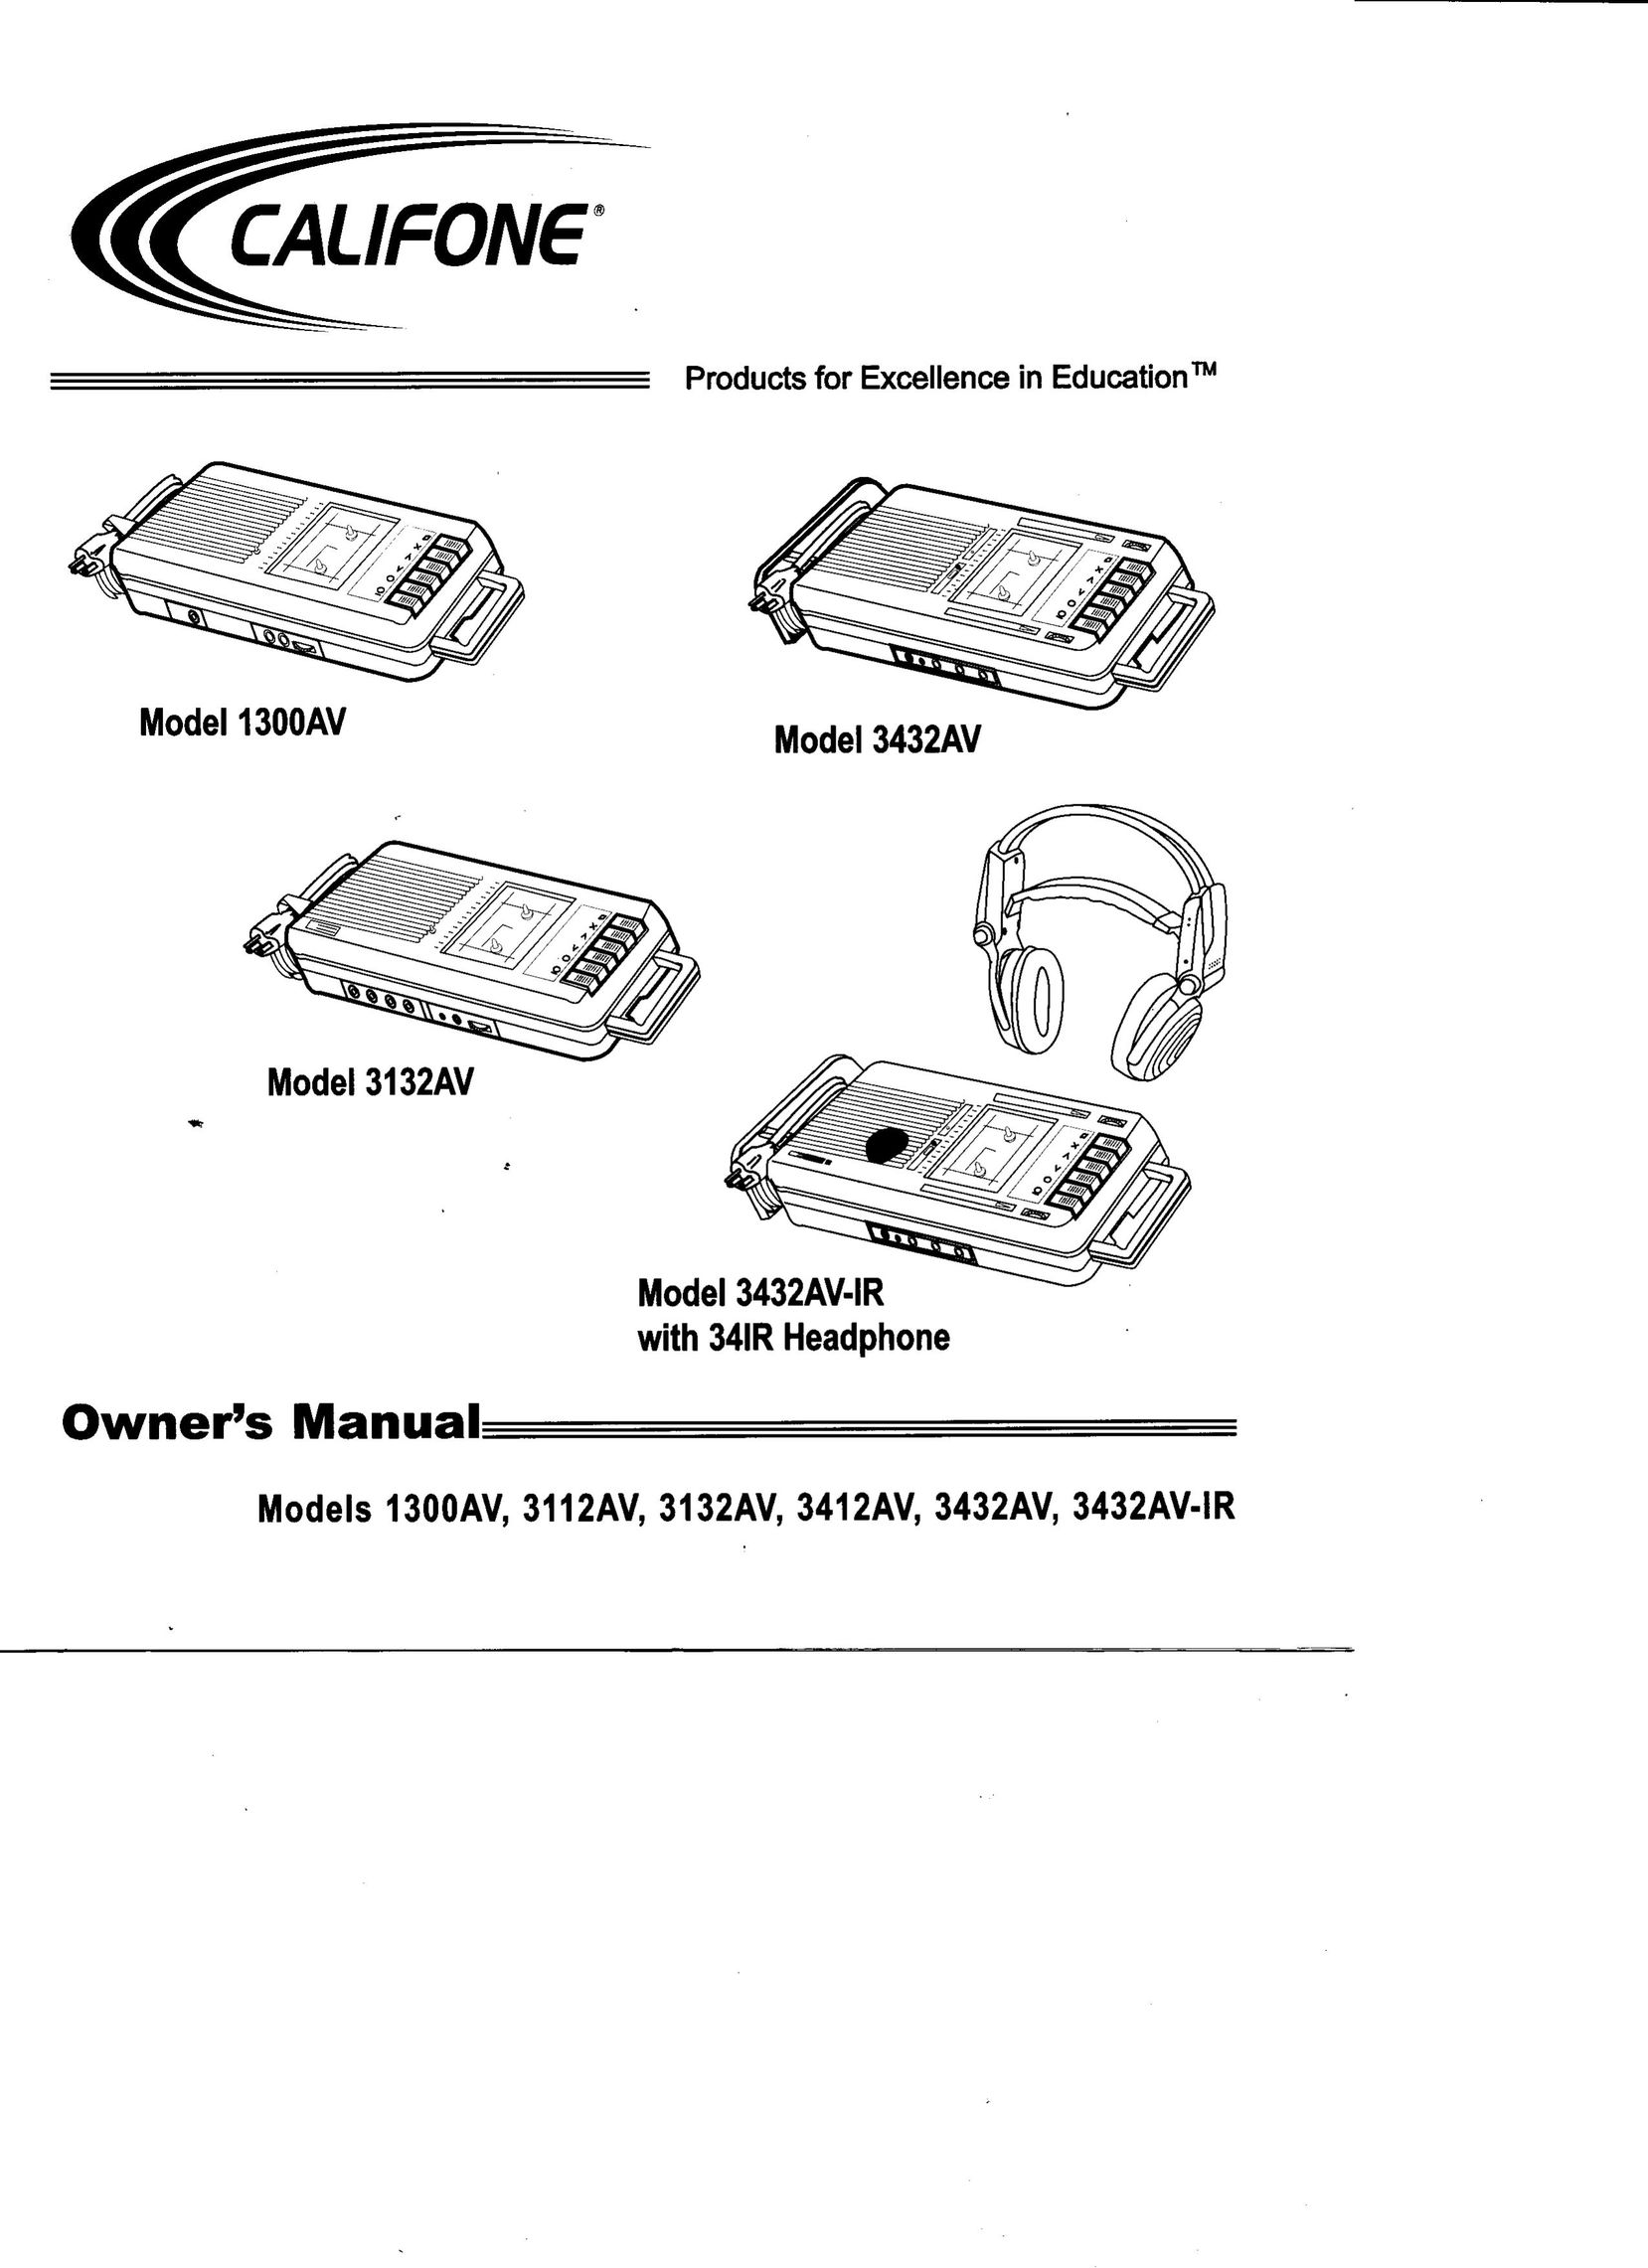 Califone 3132AV Cassette Player User Manual